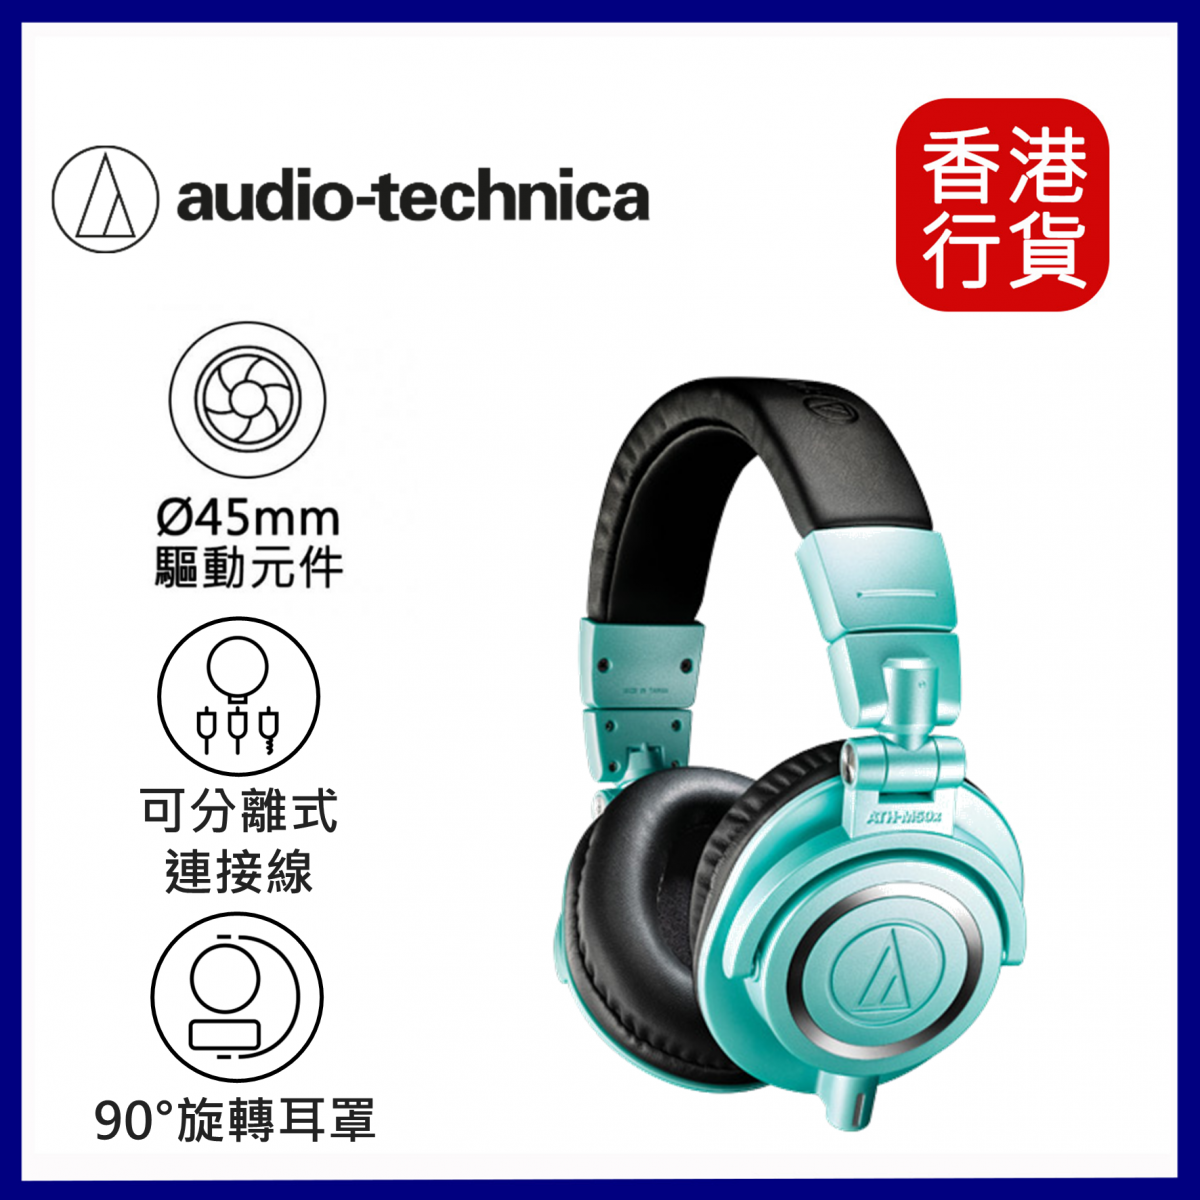 ATH-M50x 專業監聽耳筒-冰藍色︱頭戴式耳機